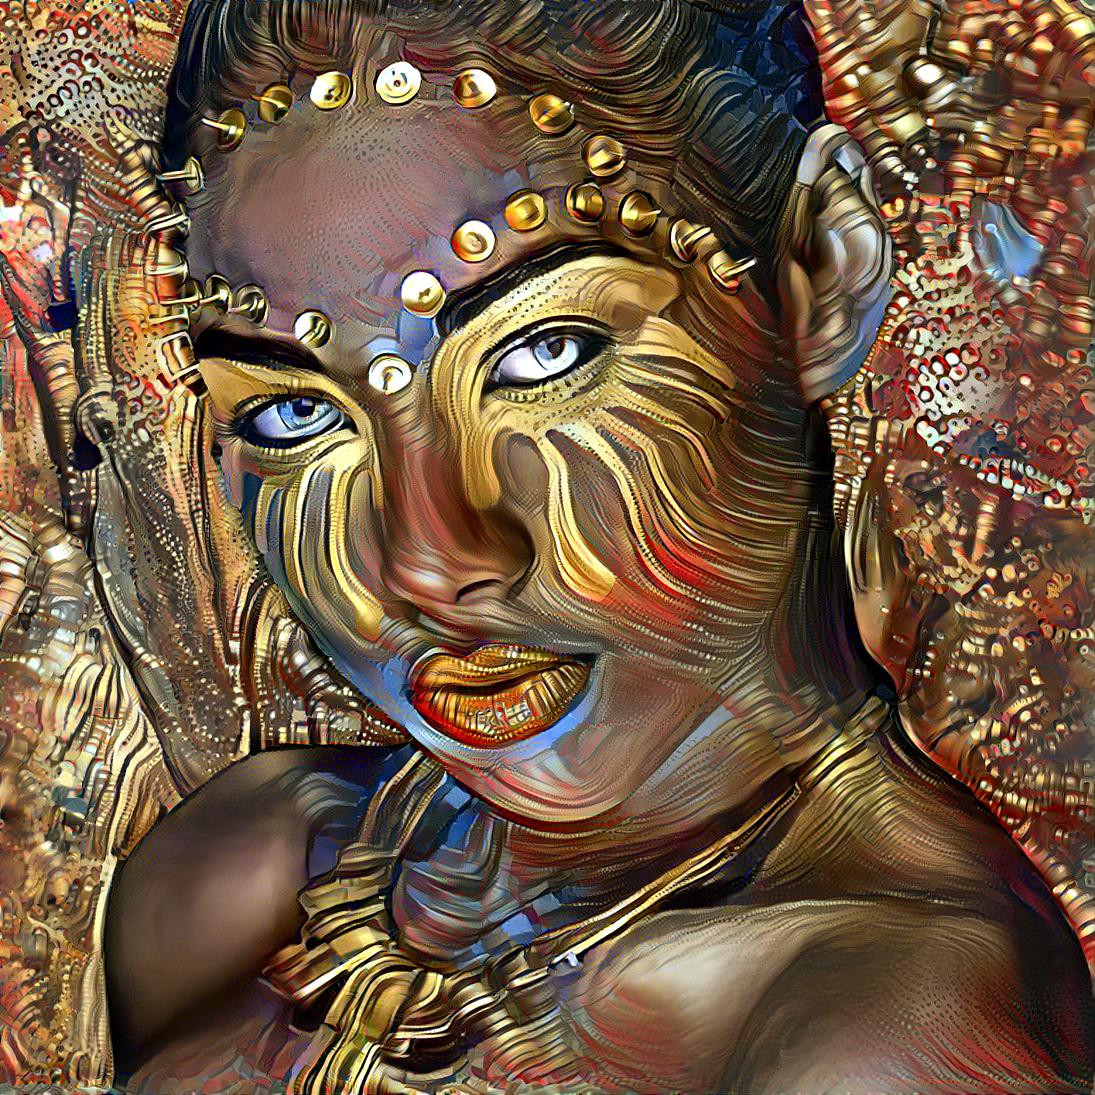 Golden Eyed Goddess [1.2MP]